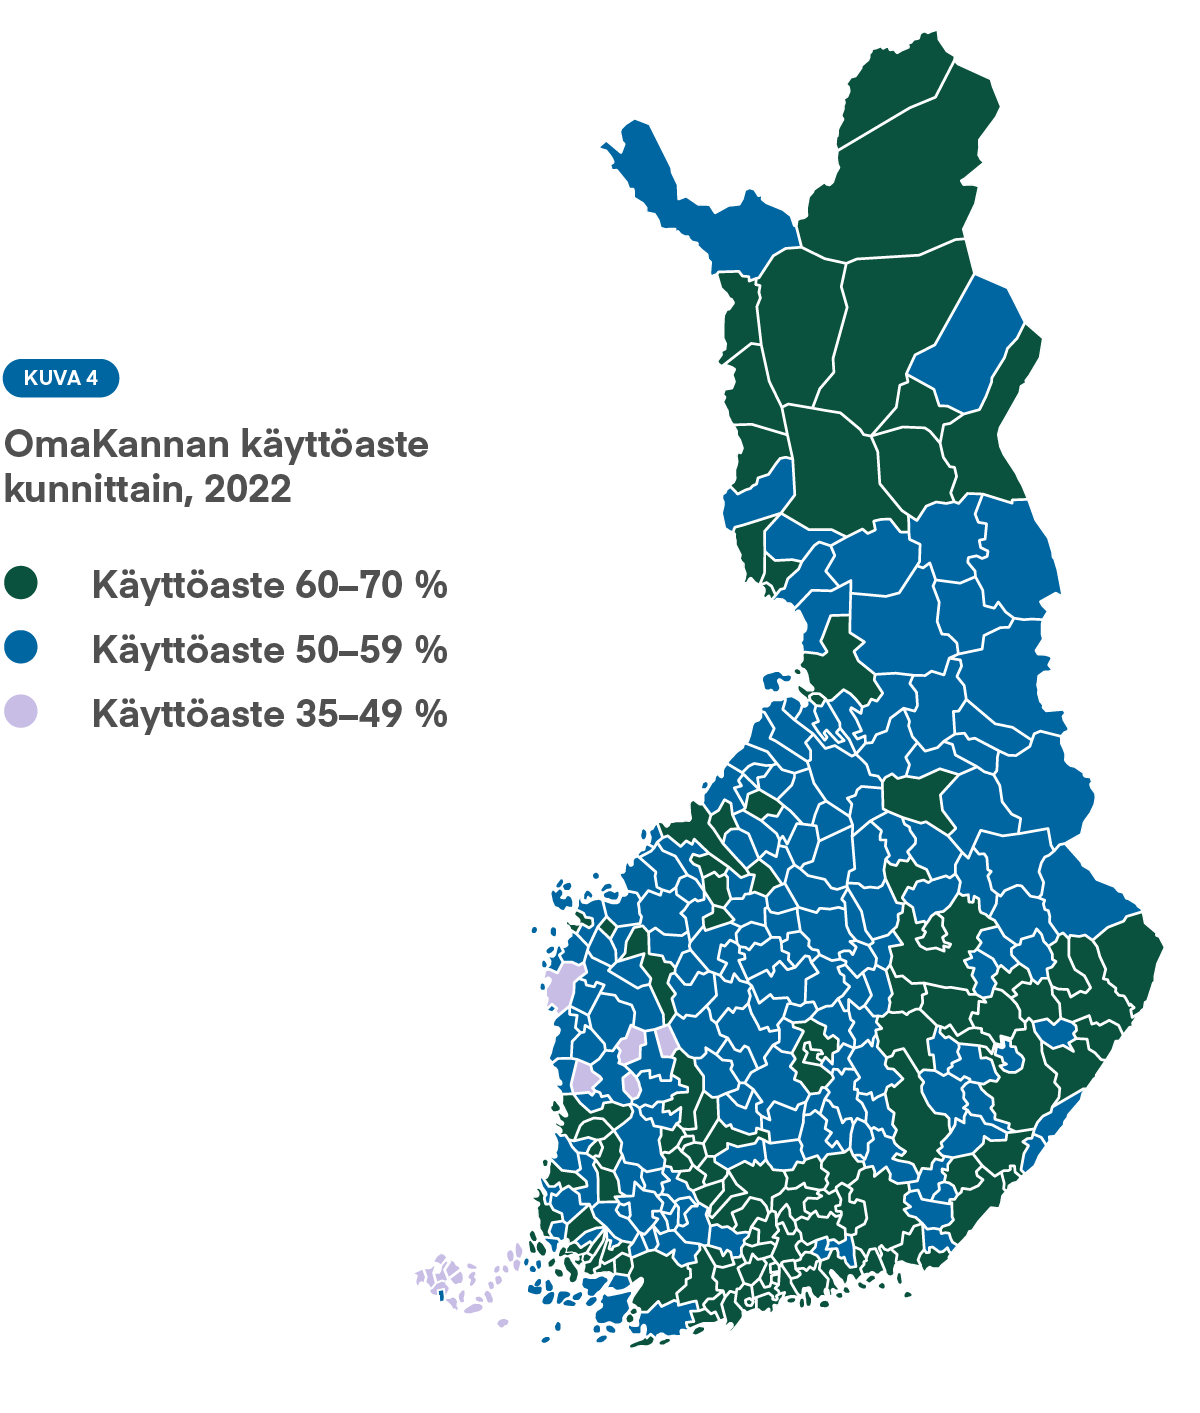 Kuva 4: Yleisintä OmaKannan käyttö on suurissa kaupungeissa, Etelä-Suomessa ja Lapissa. Palvelun käyttö on vähäisintä Kainuussa, Keski-Suomessa ja Pohjois-Karjalassa.